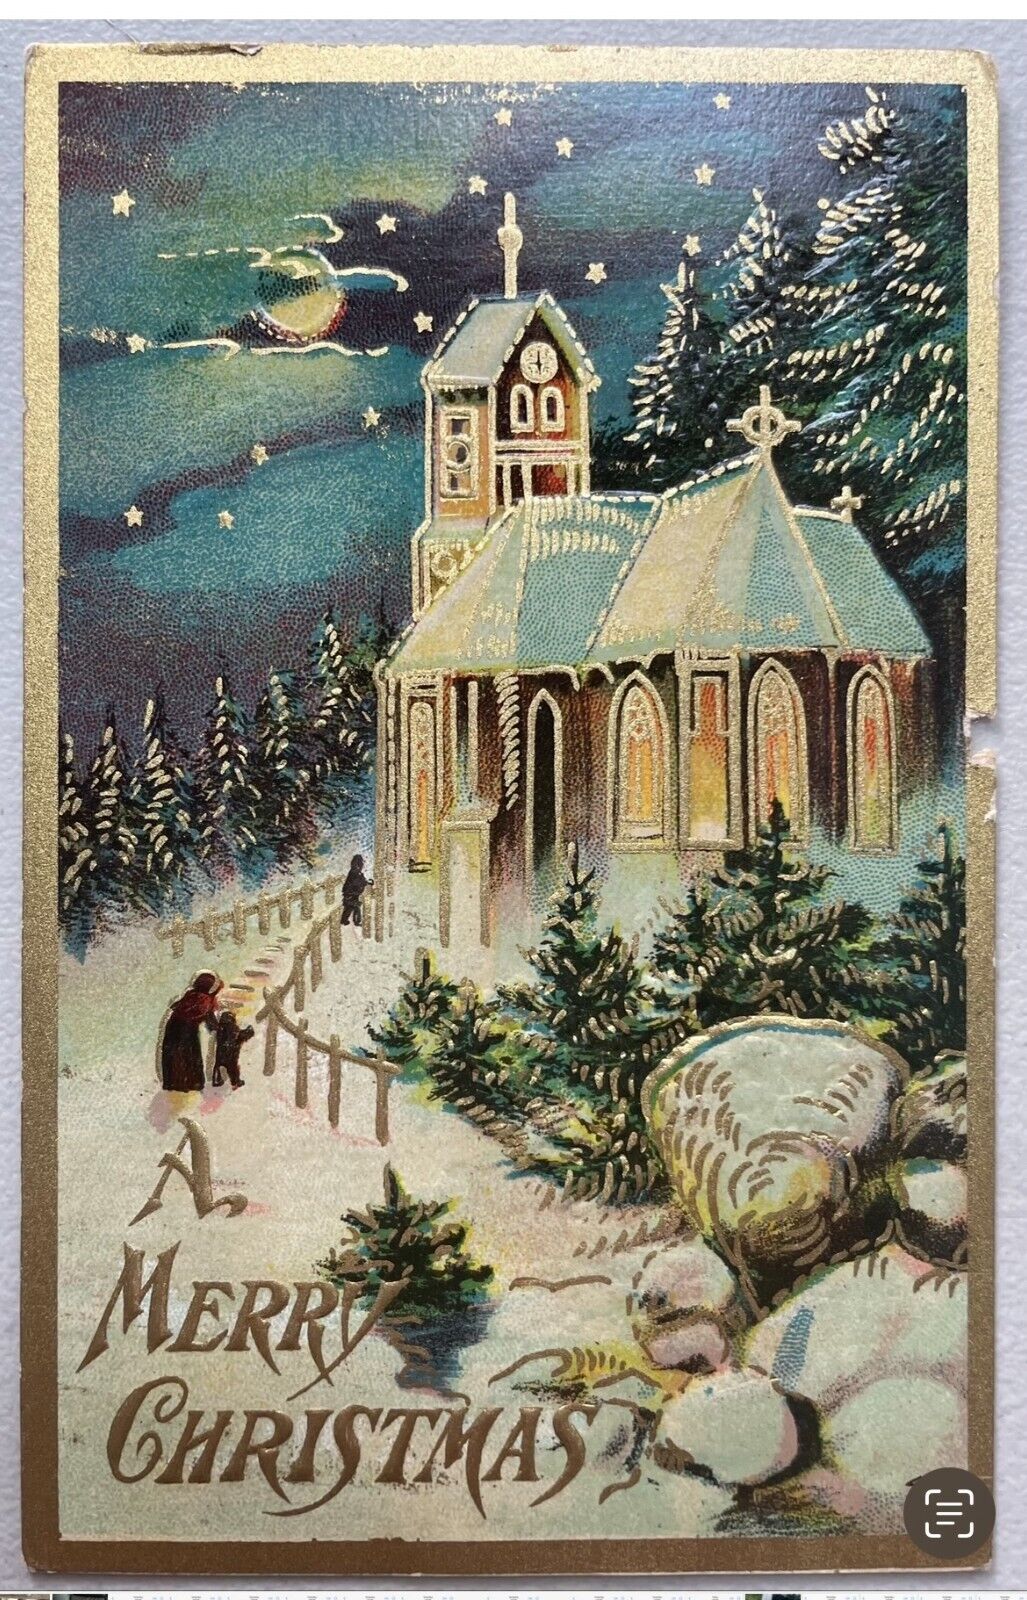 A Merry Christmas Church Snow Scene vintage postcard